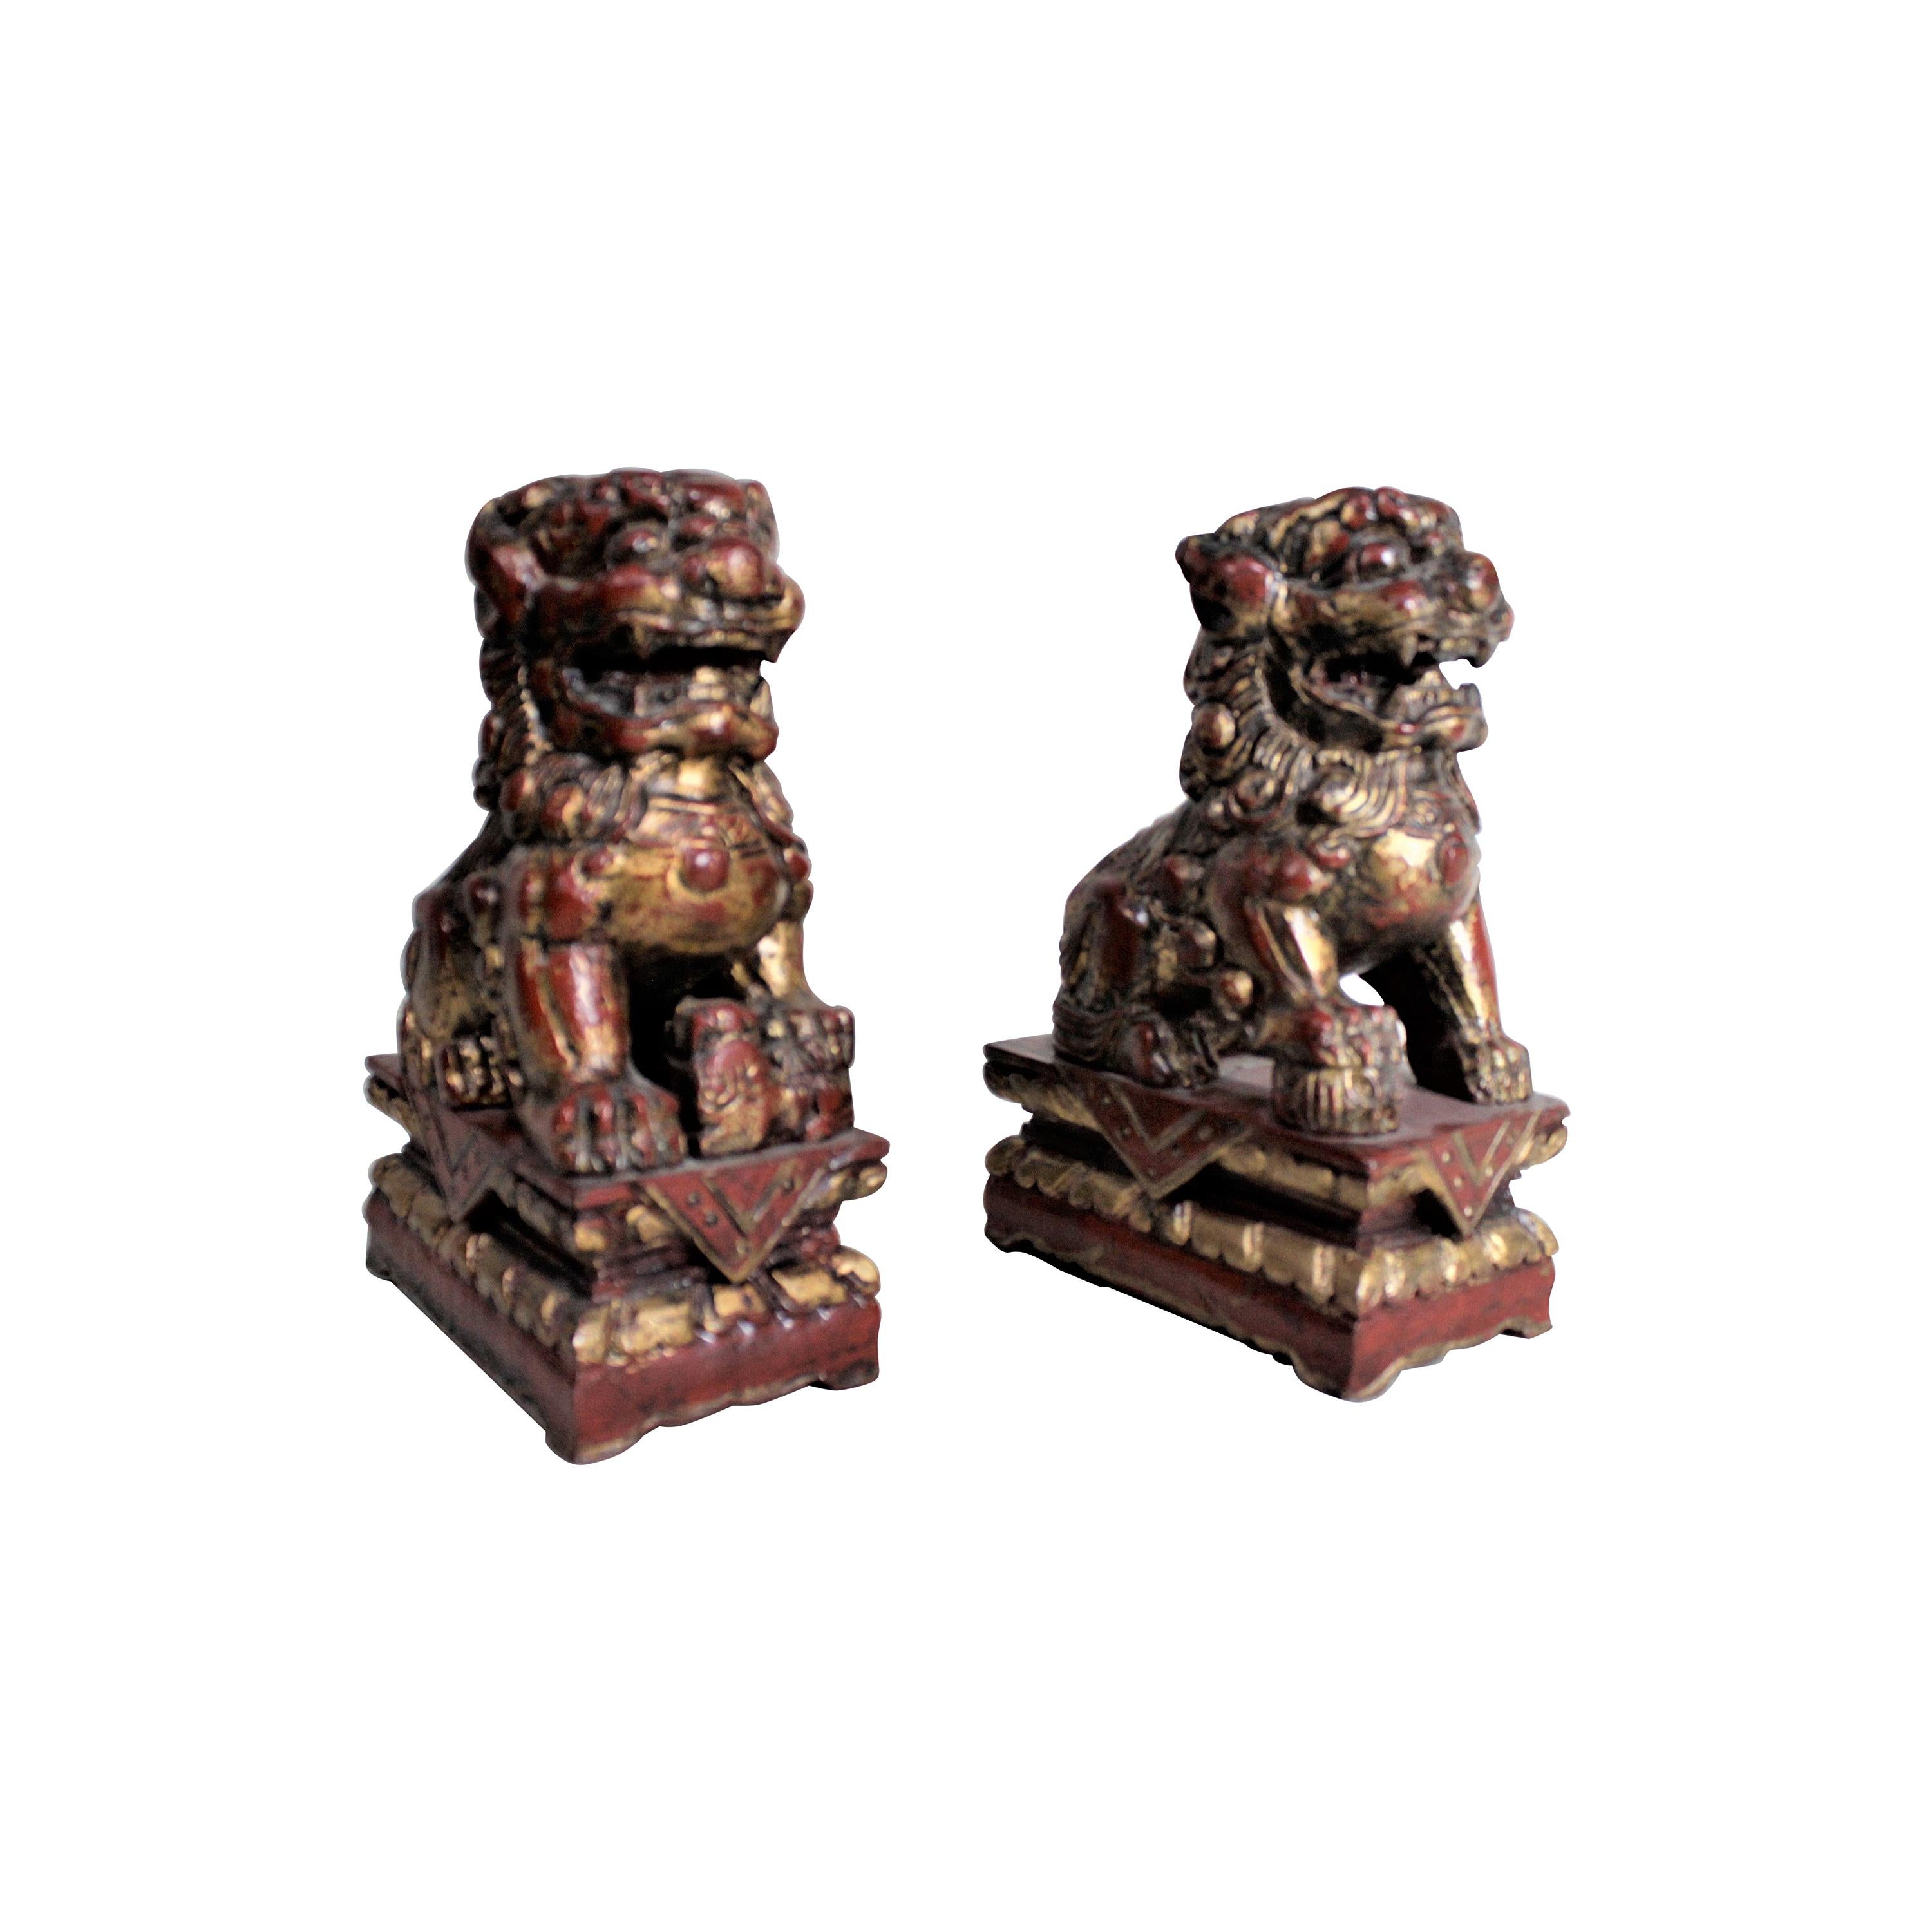 Paire de figurines ou sculptures chinoises de chien Foo en bois sculpté et finition dorée